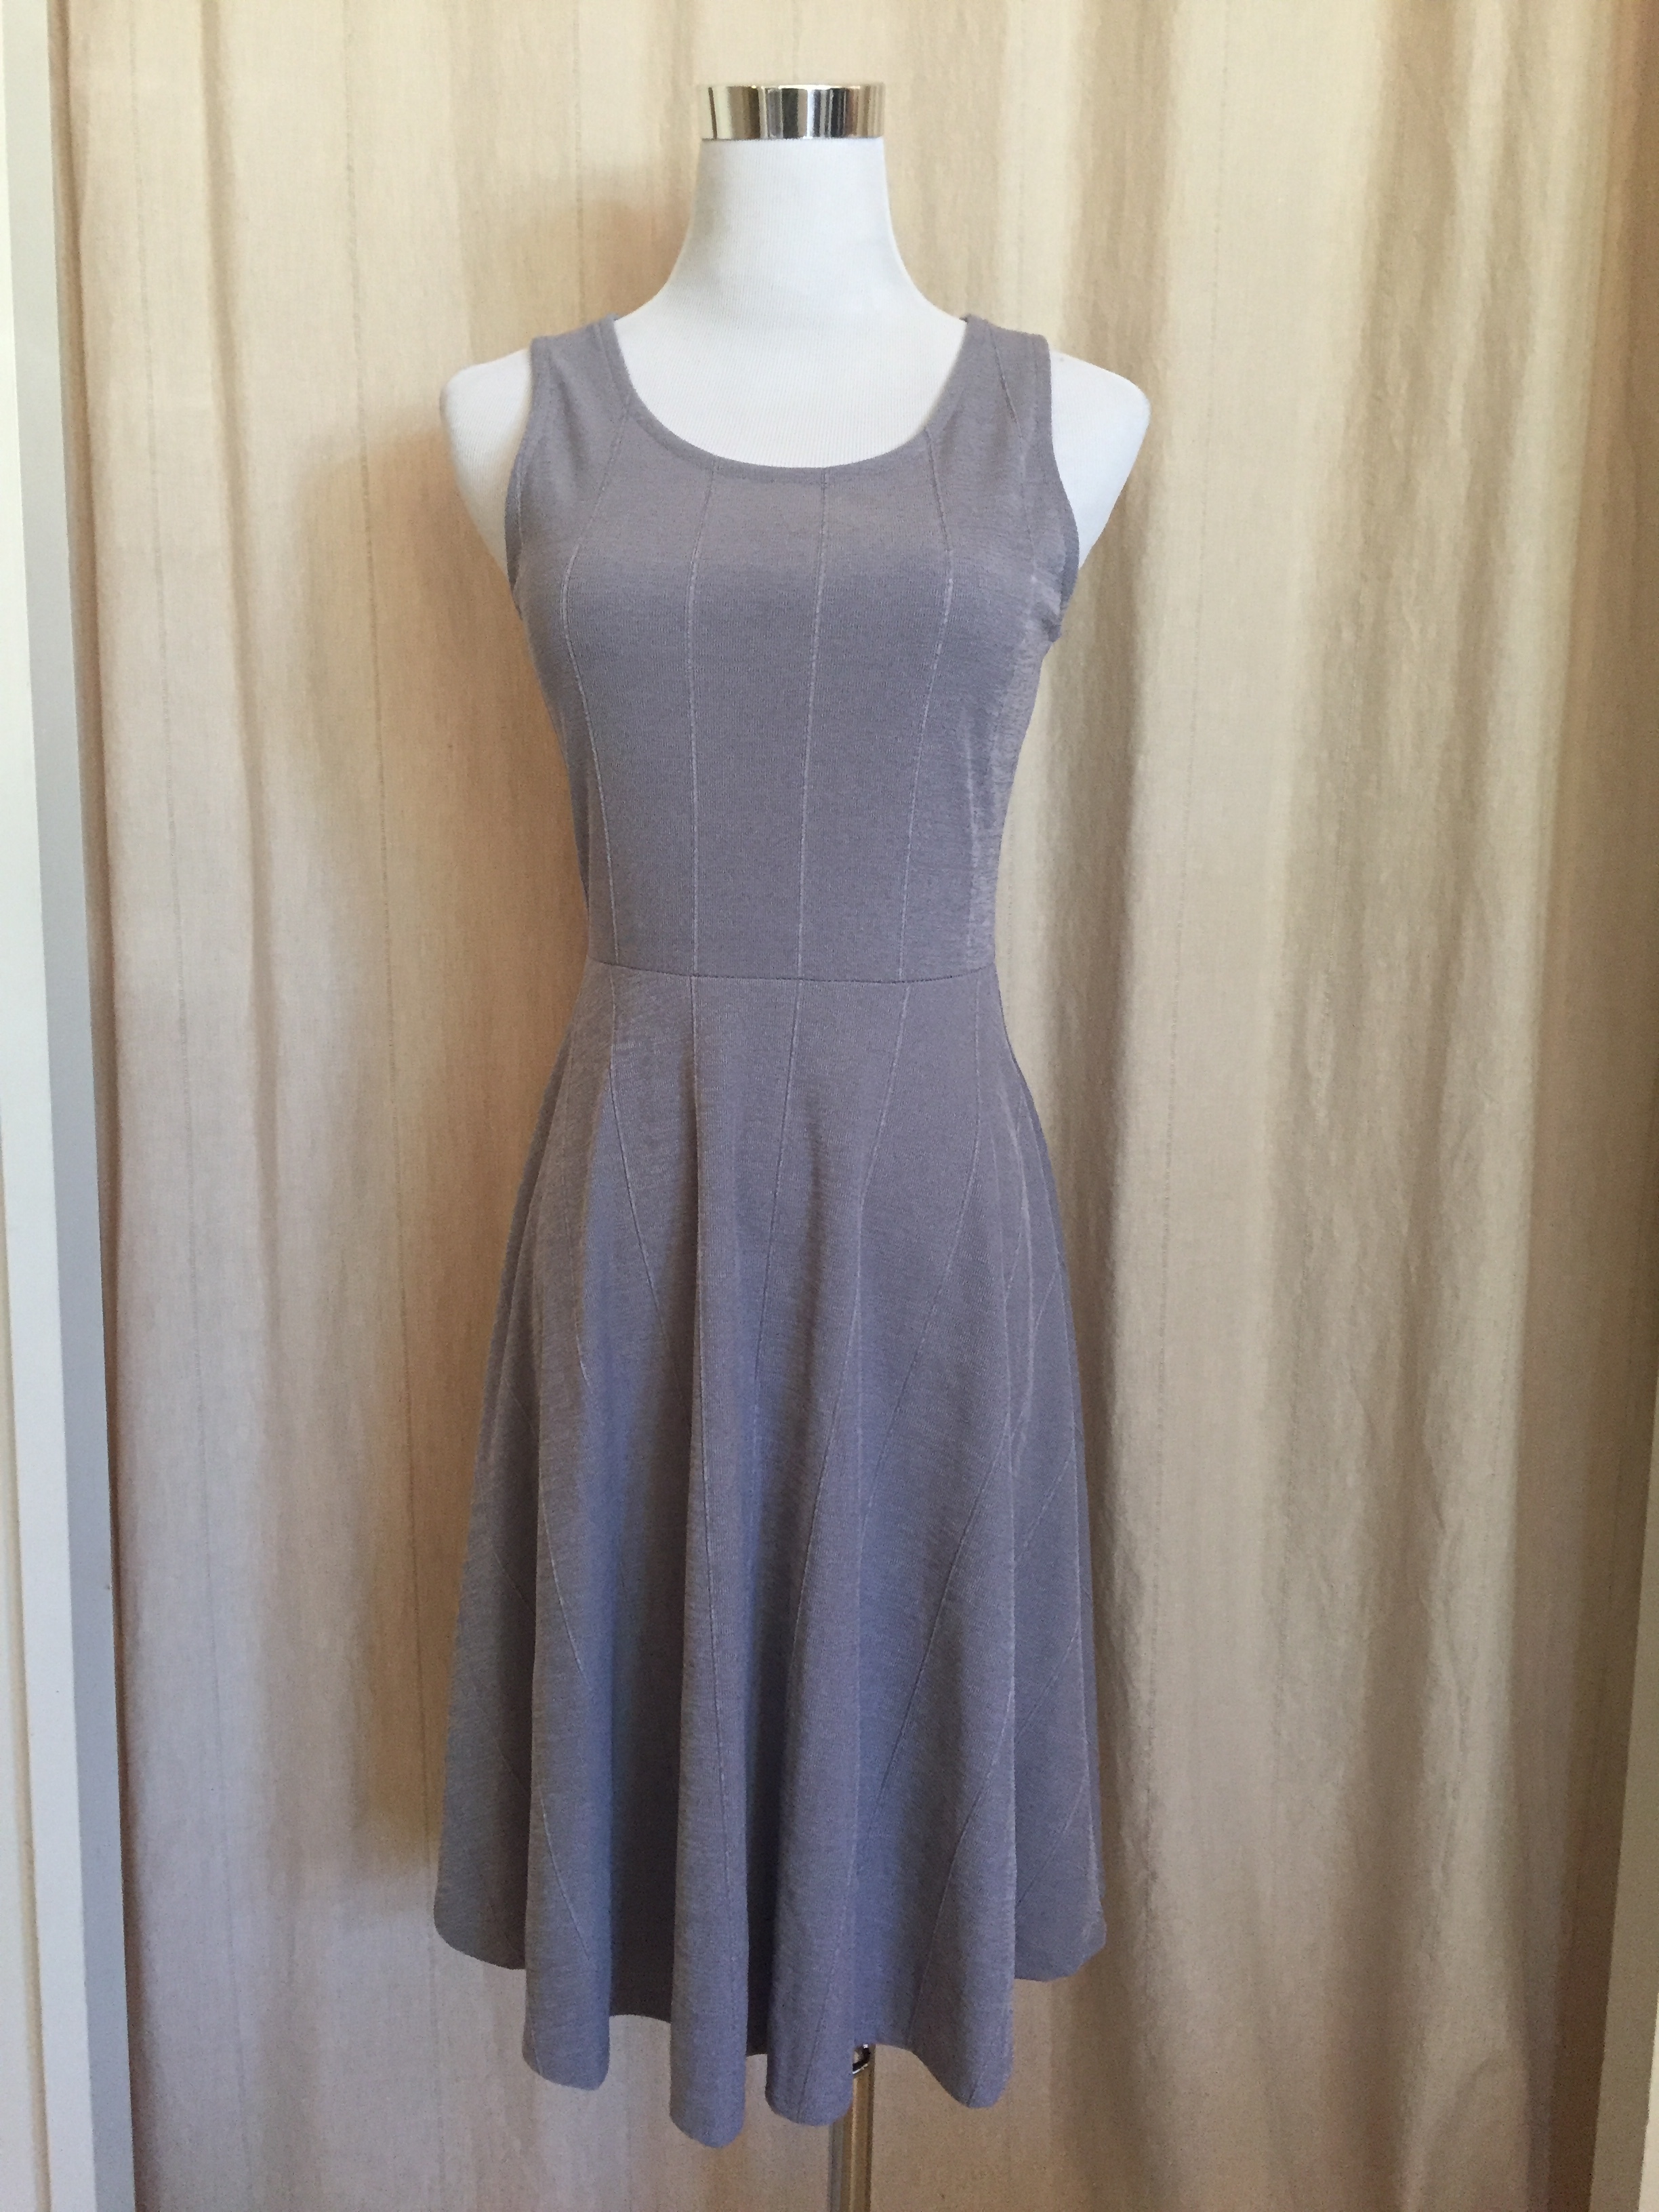  Gray Skater Dress, $42 